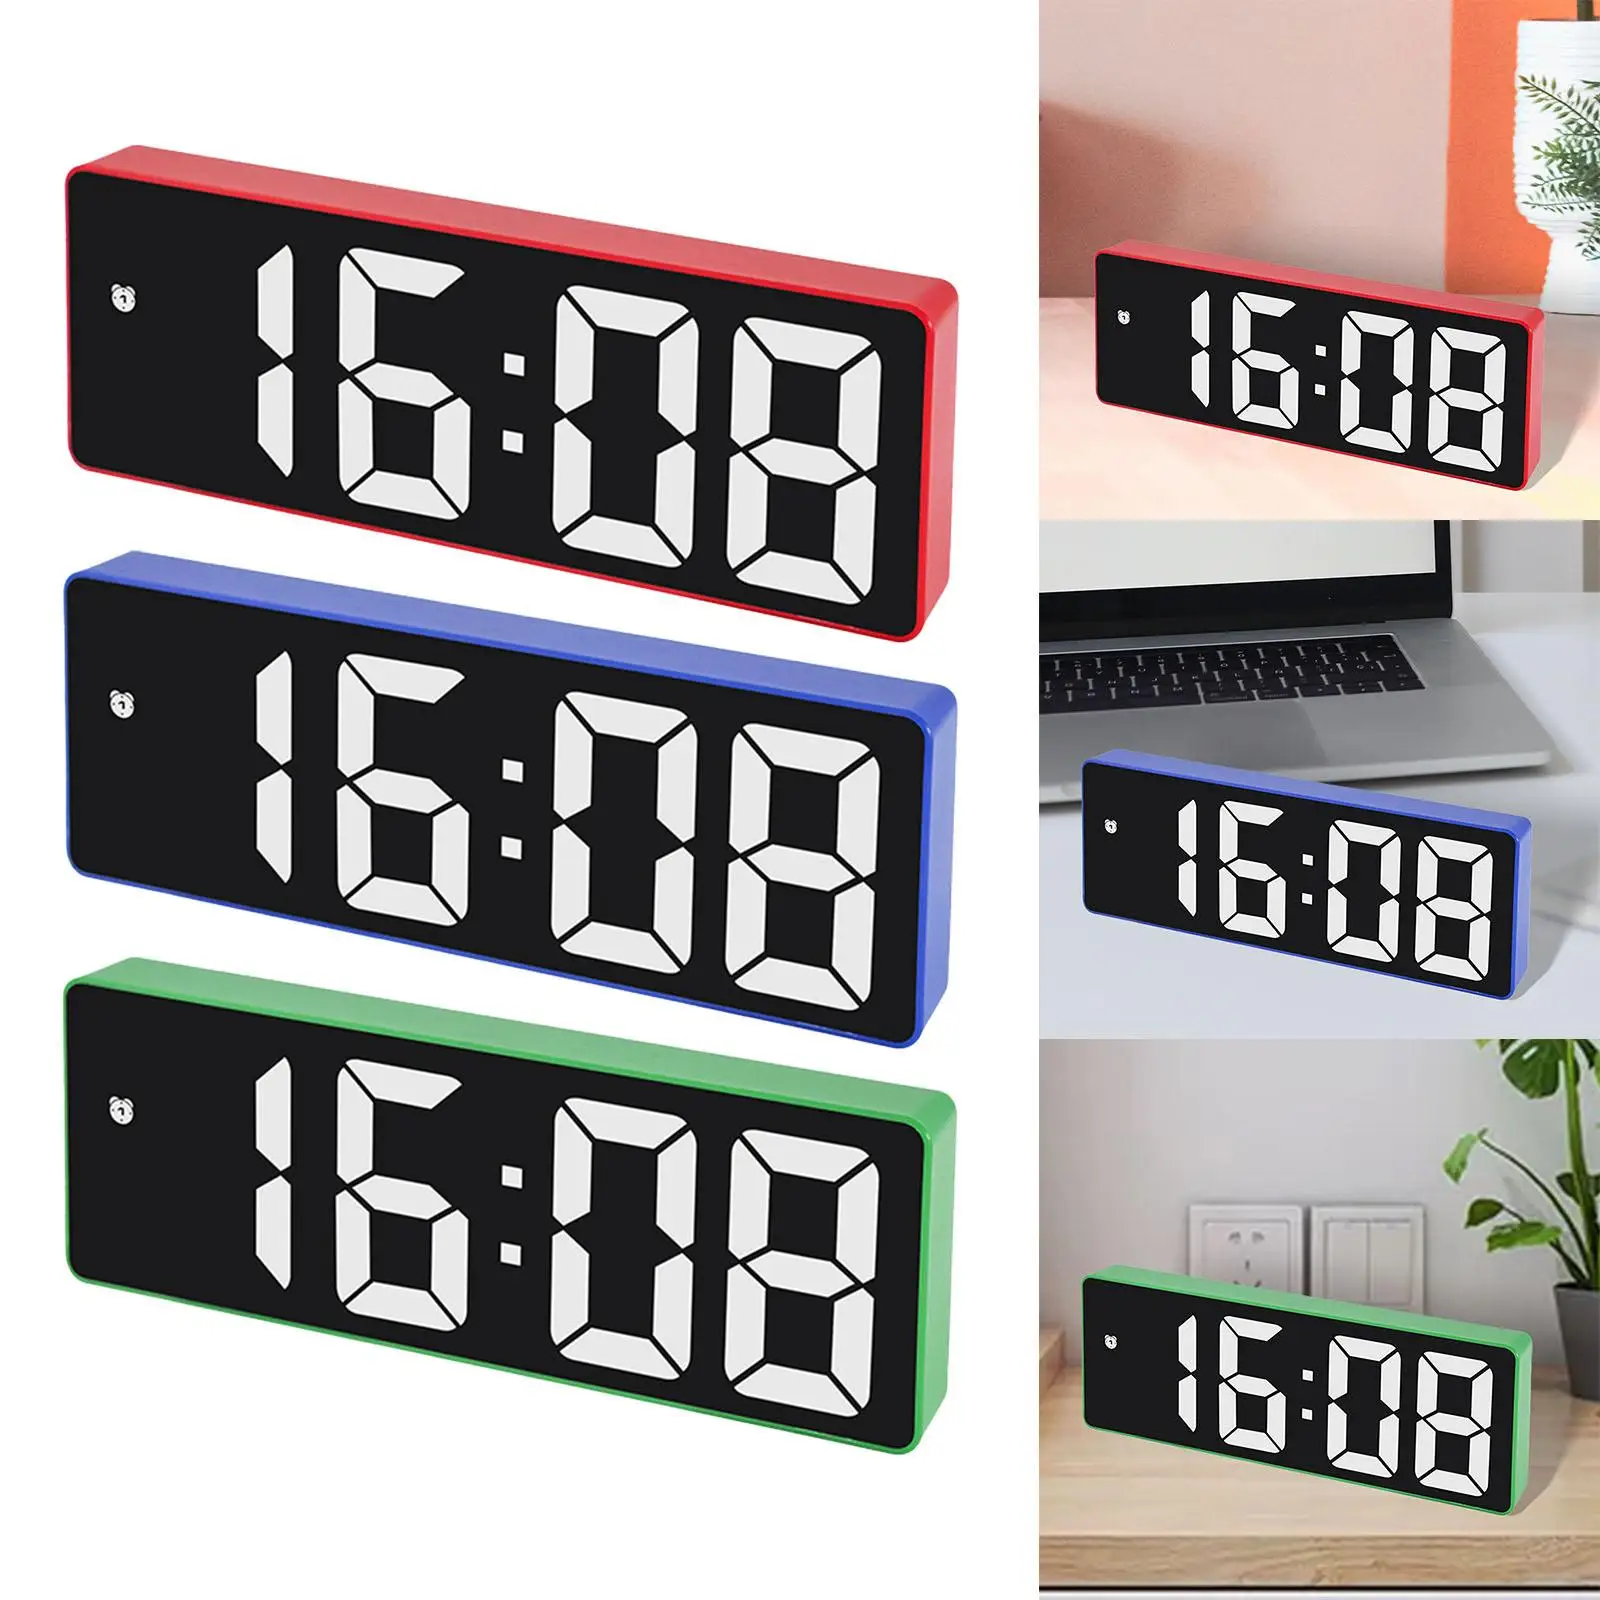 Digital Alarm Clock Large Display Adjustable Brightness with Snooze for Desktop Office Kids